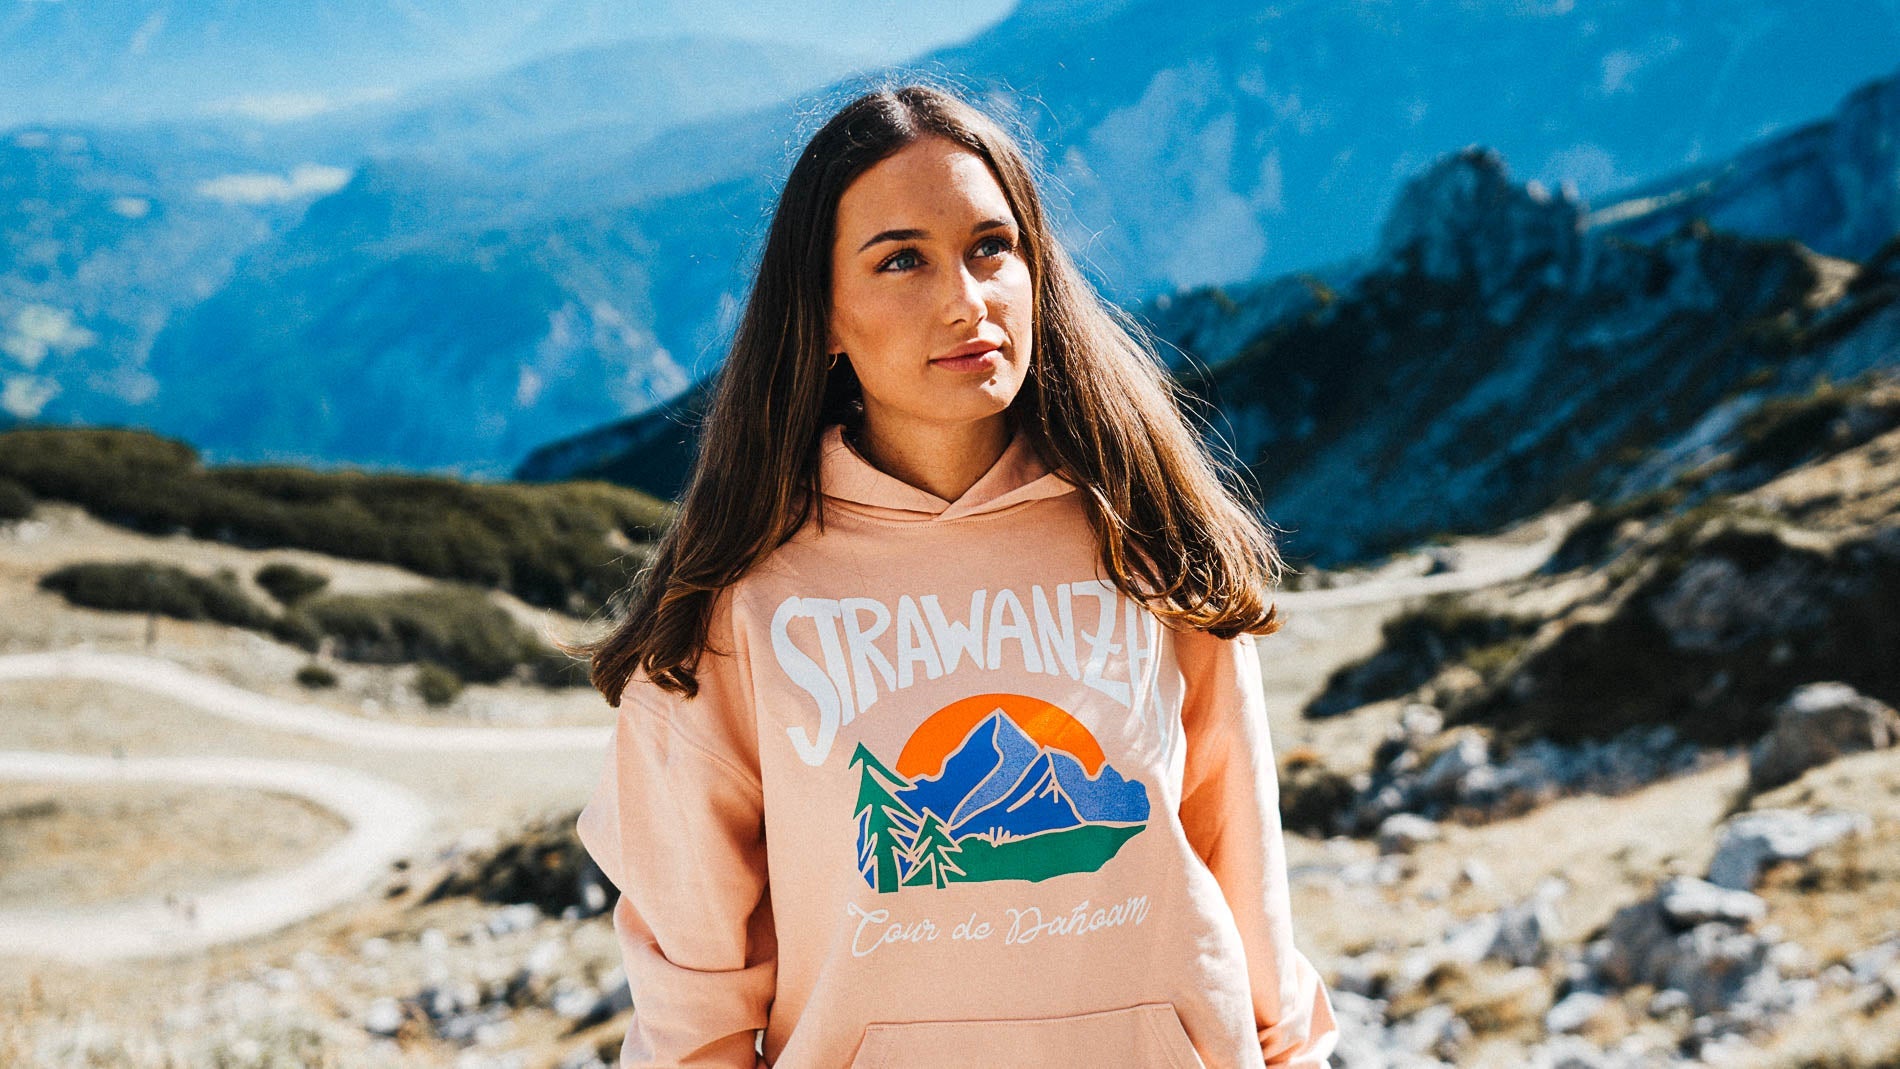 Junge Frau präsentiert einen Kapuzenpullover der Modemarke Strawanza in einer Berglandschaft.